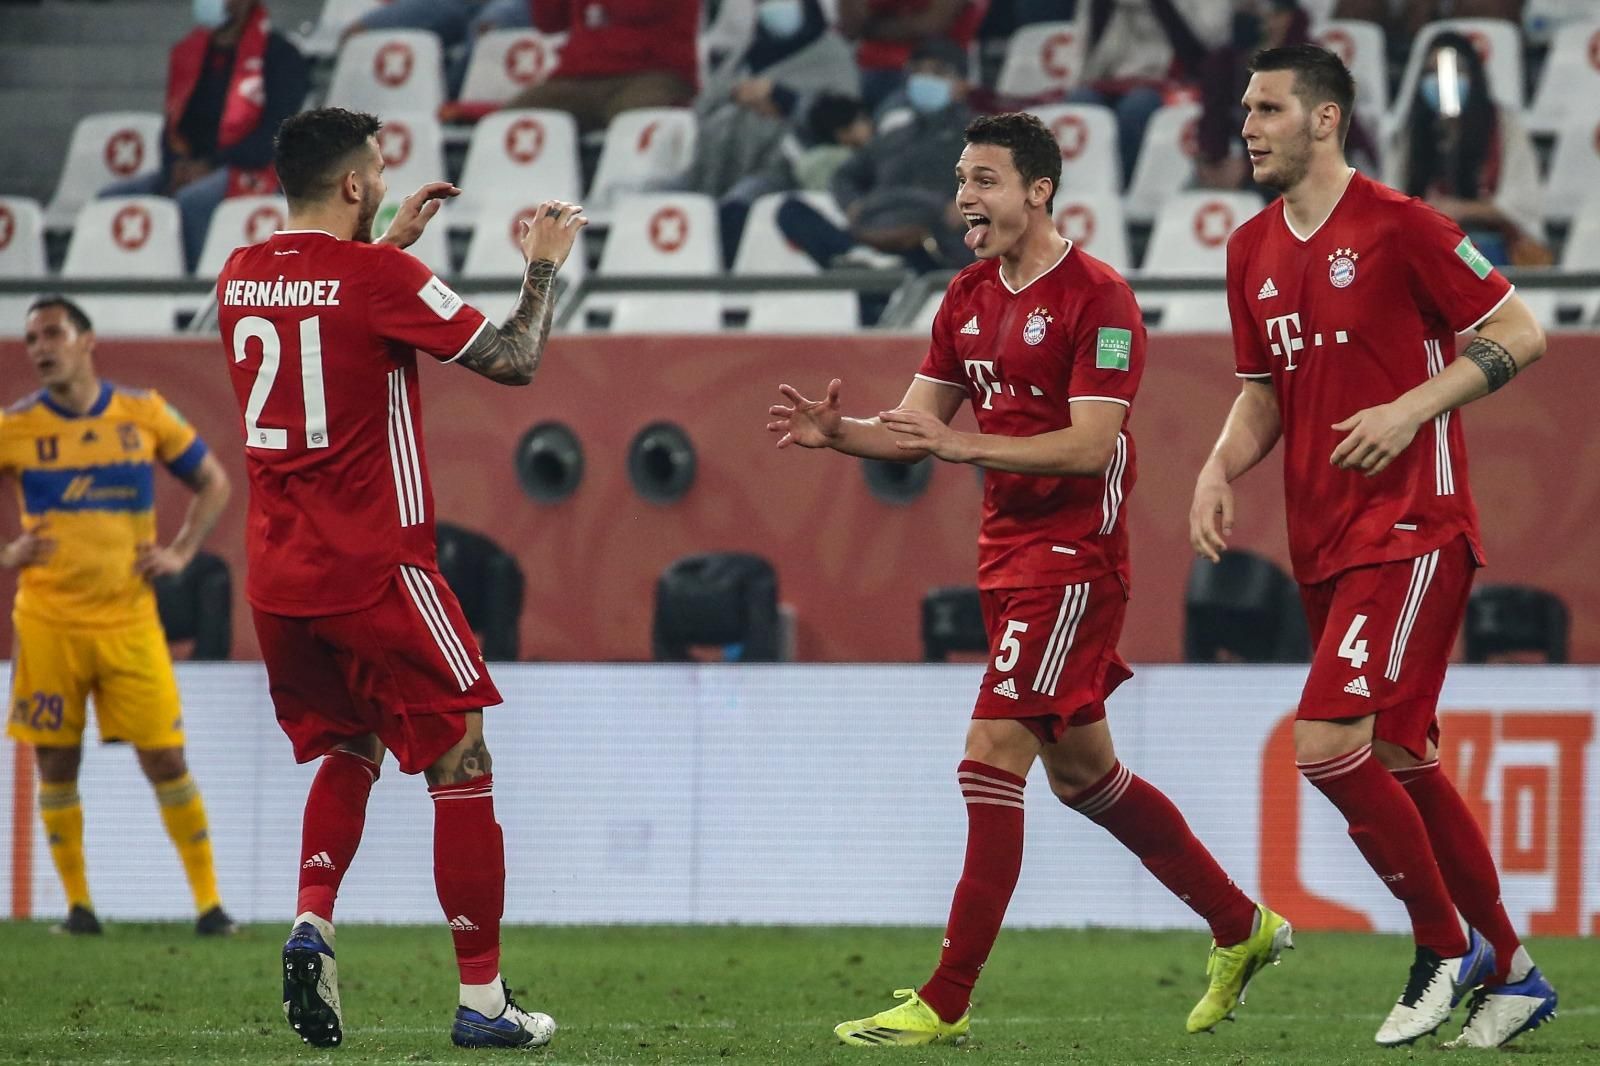 Bayern é campeão mundial pela 4ª vez e estabelece recorde europeu - 11/02/ 2021 - Esporte - Folha